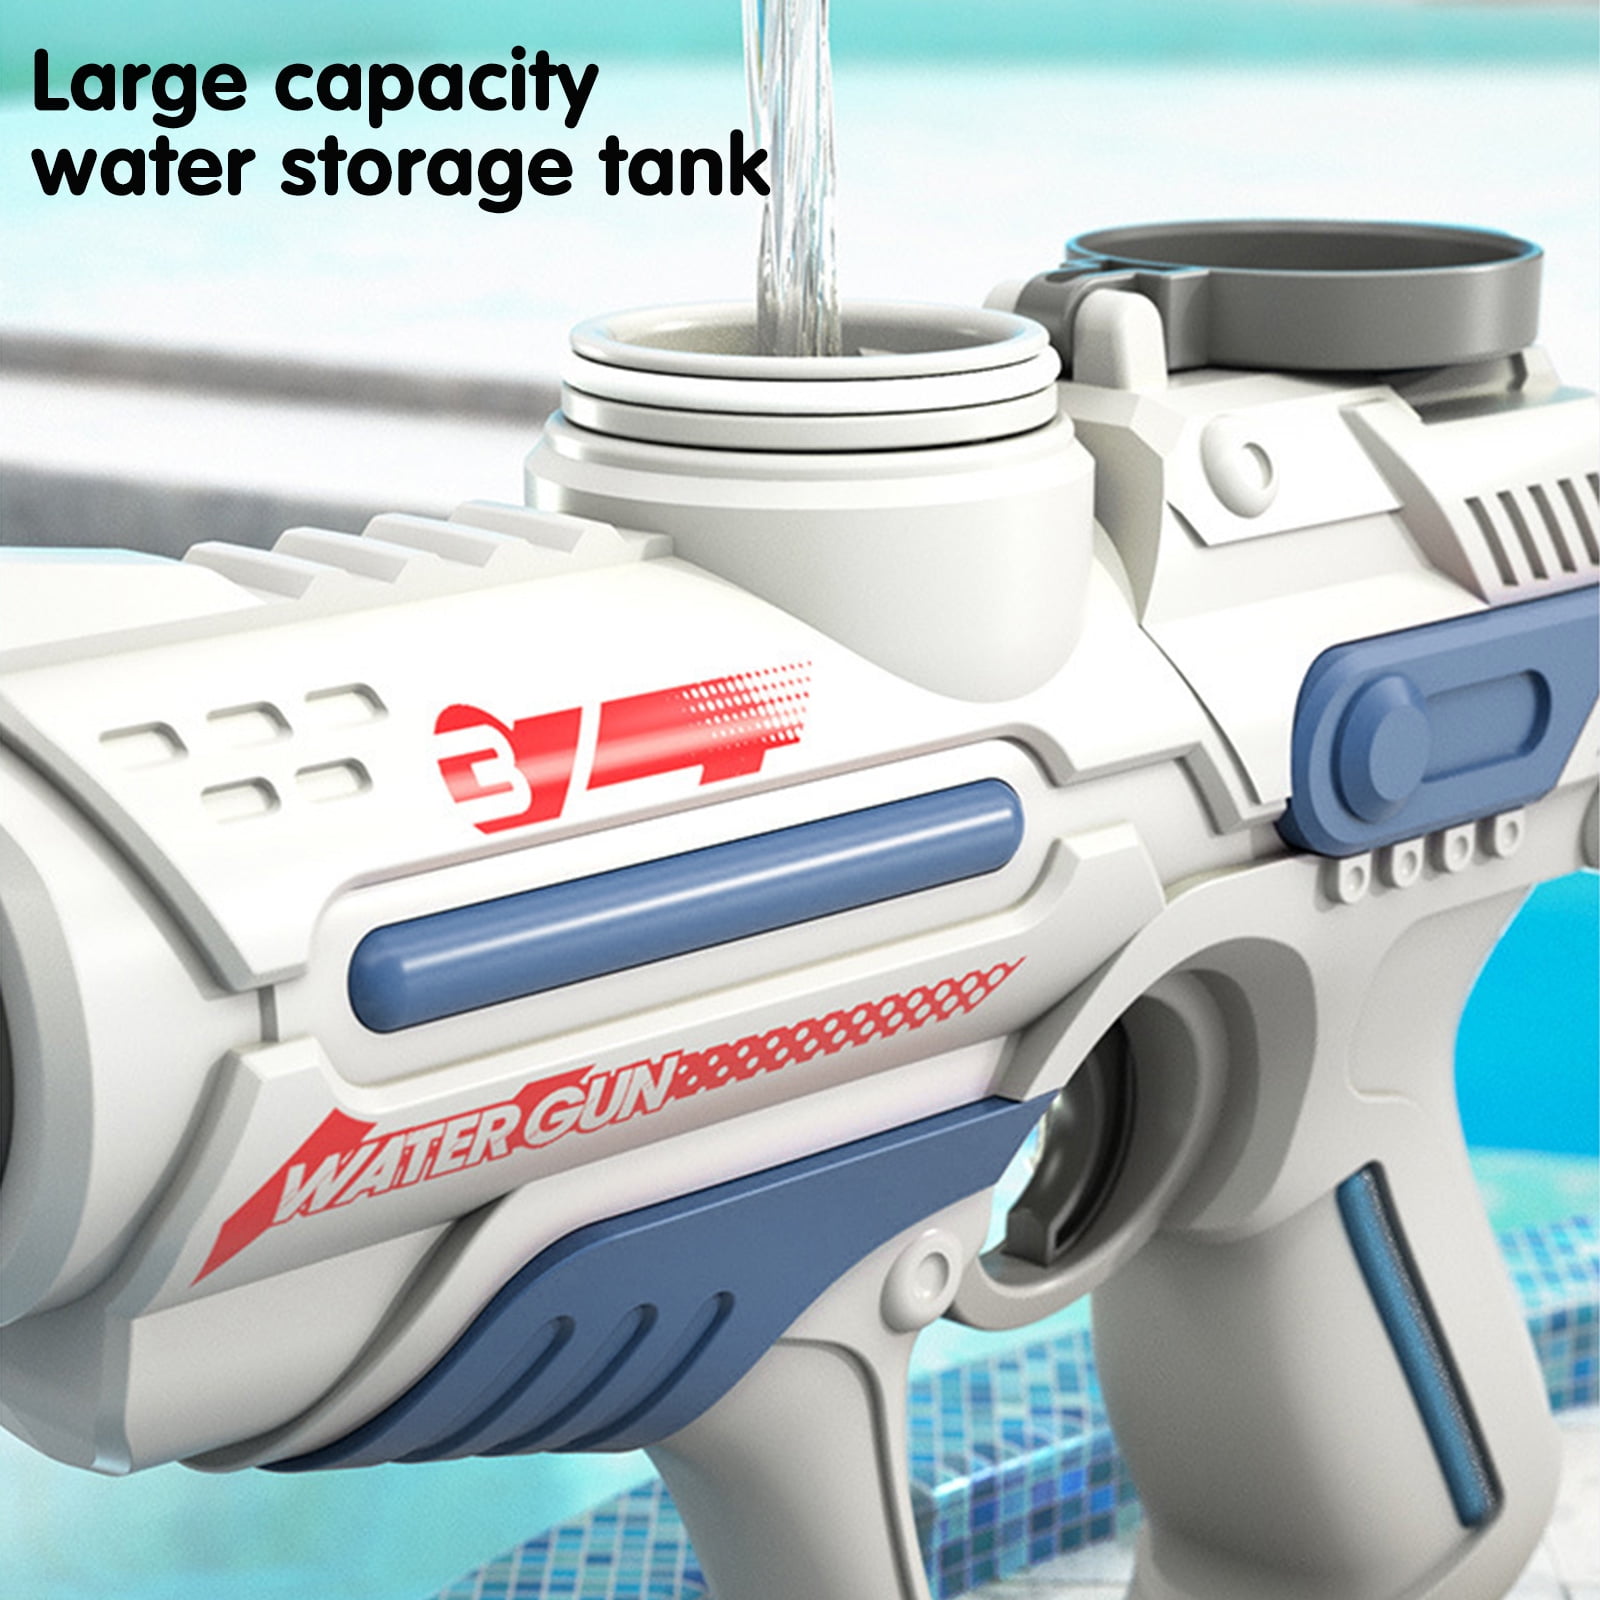 GetUSCart- Water Gun - Electric Water Gun with 32 Ft Long Range